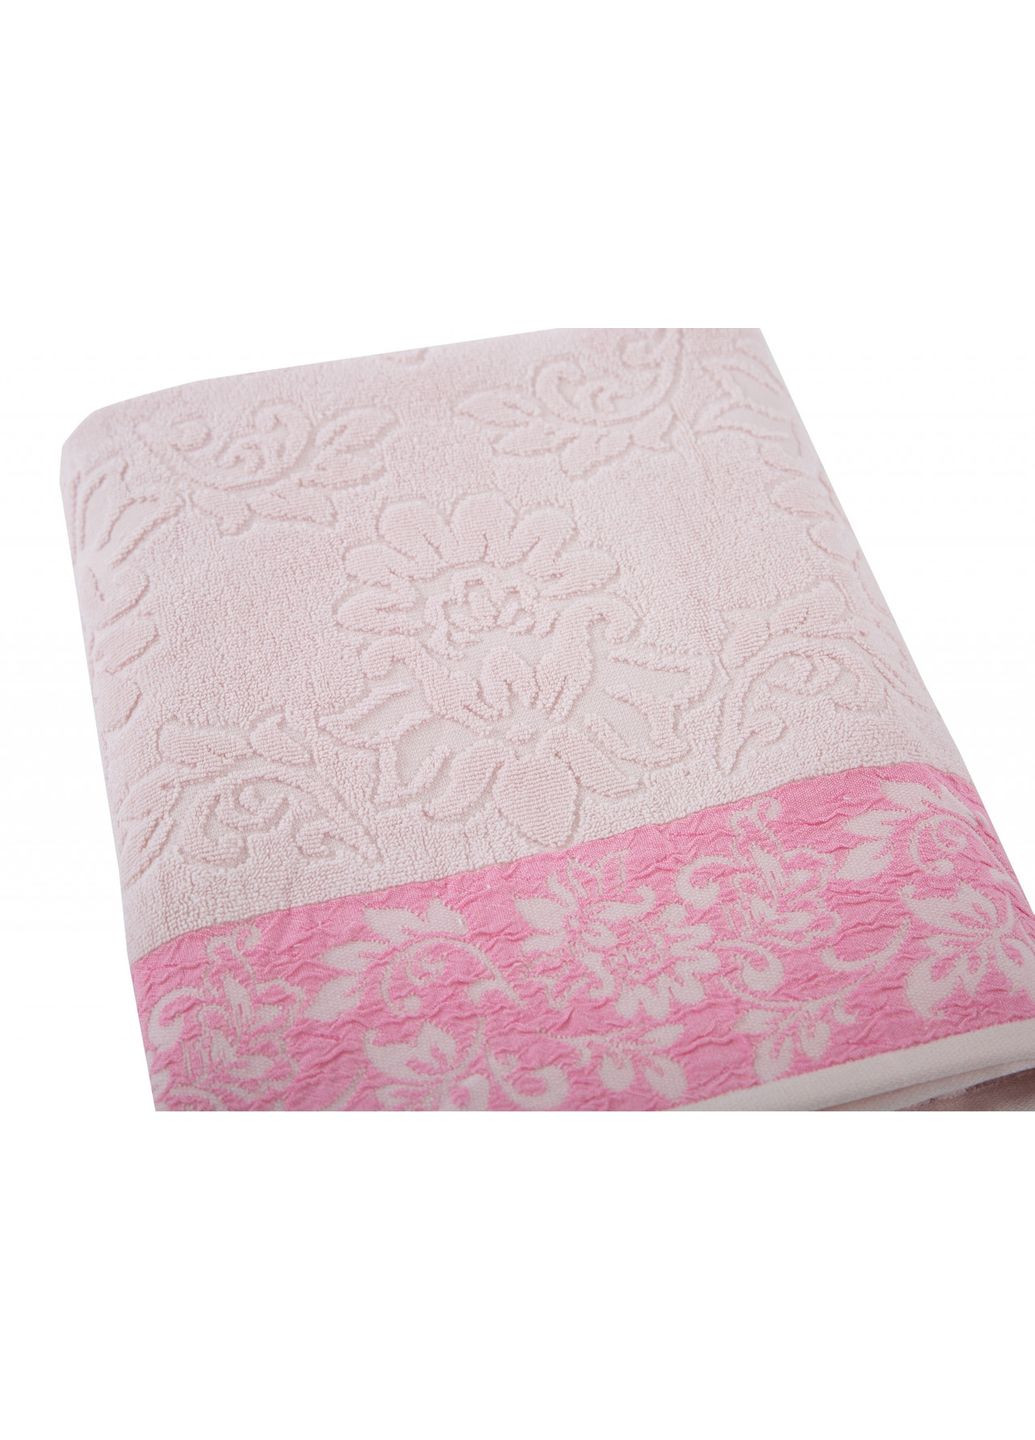 Irya полотенце jakarli - scarlet pembe розовый 50*90 розовый производство -